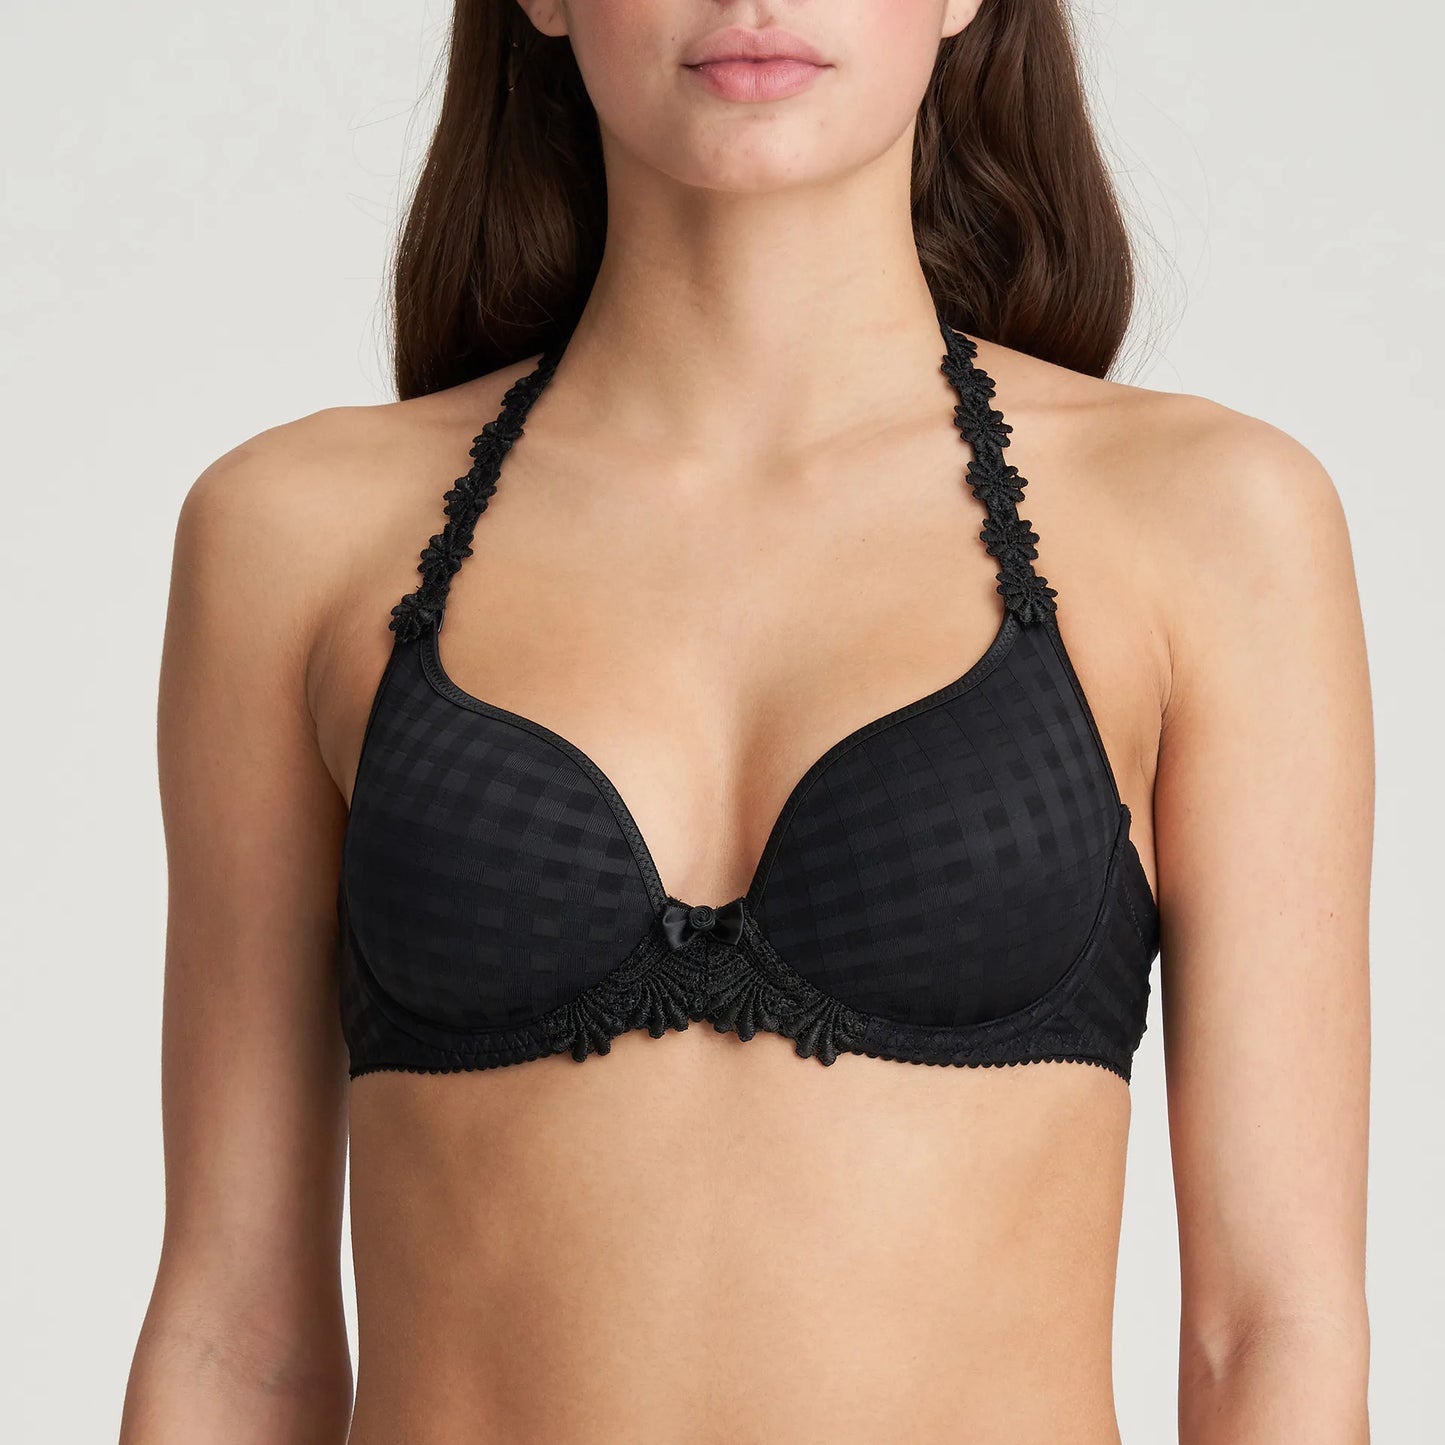 Avero Padded Heart Shape Bra in Black by Marie Jo - front view of bra on model